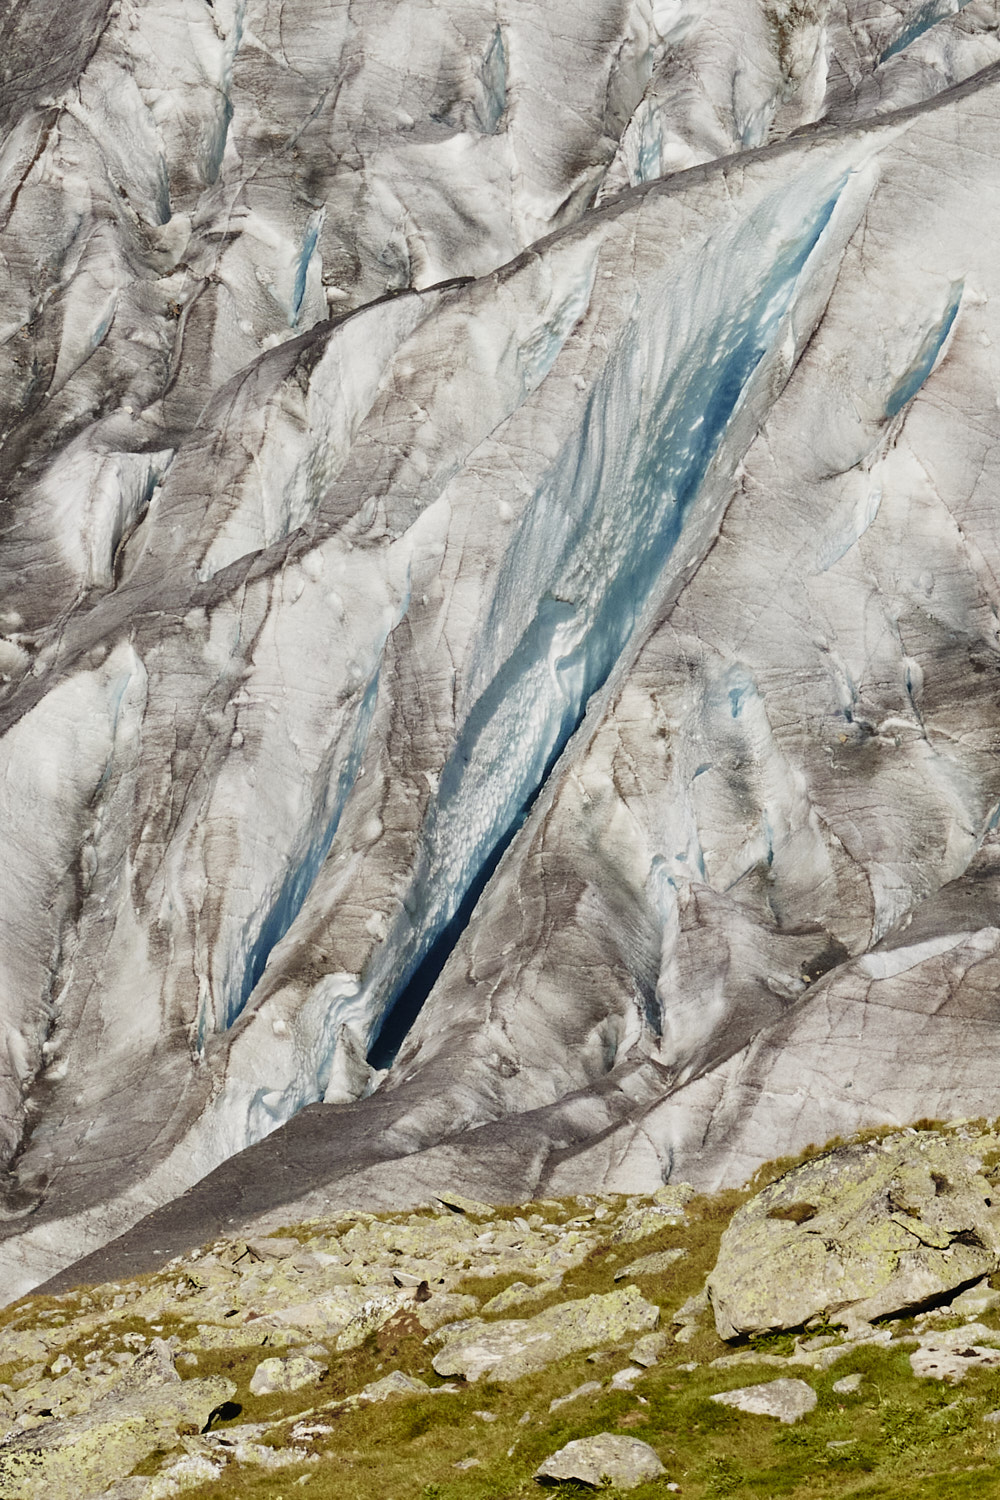 Aletsch Gletscher Switzerland 6 years later